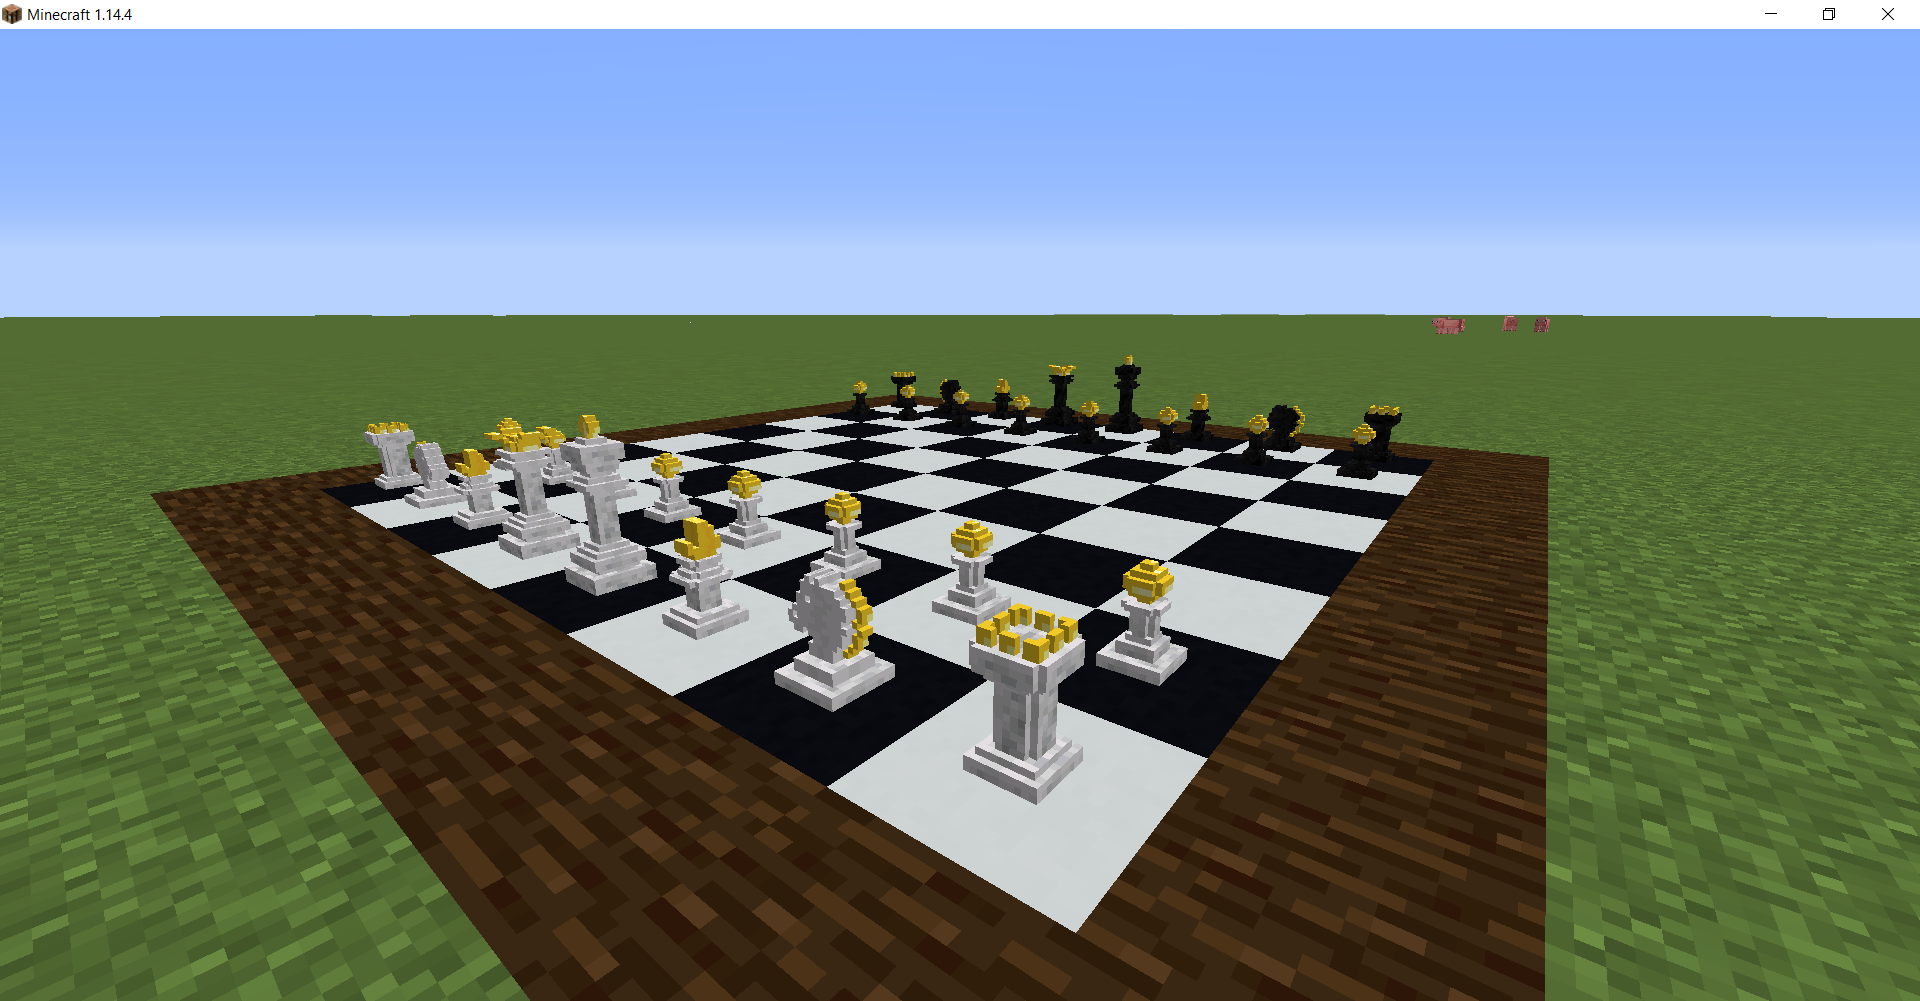 Minecrafti mängijad loovad esemeraamistikest mängitava malemängu